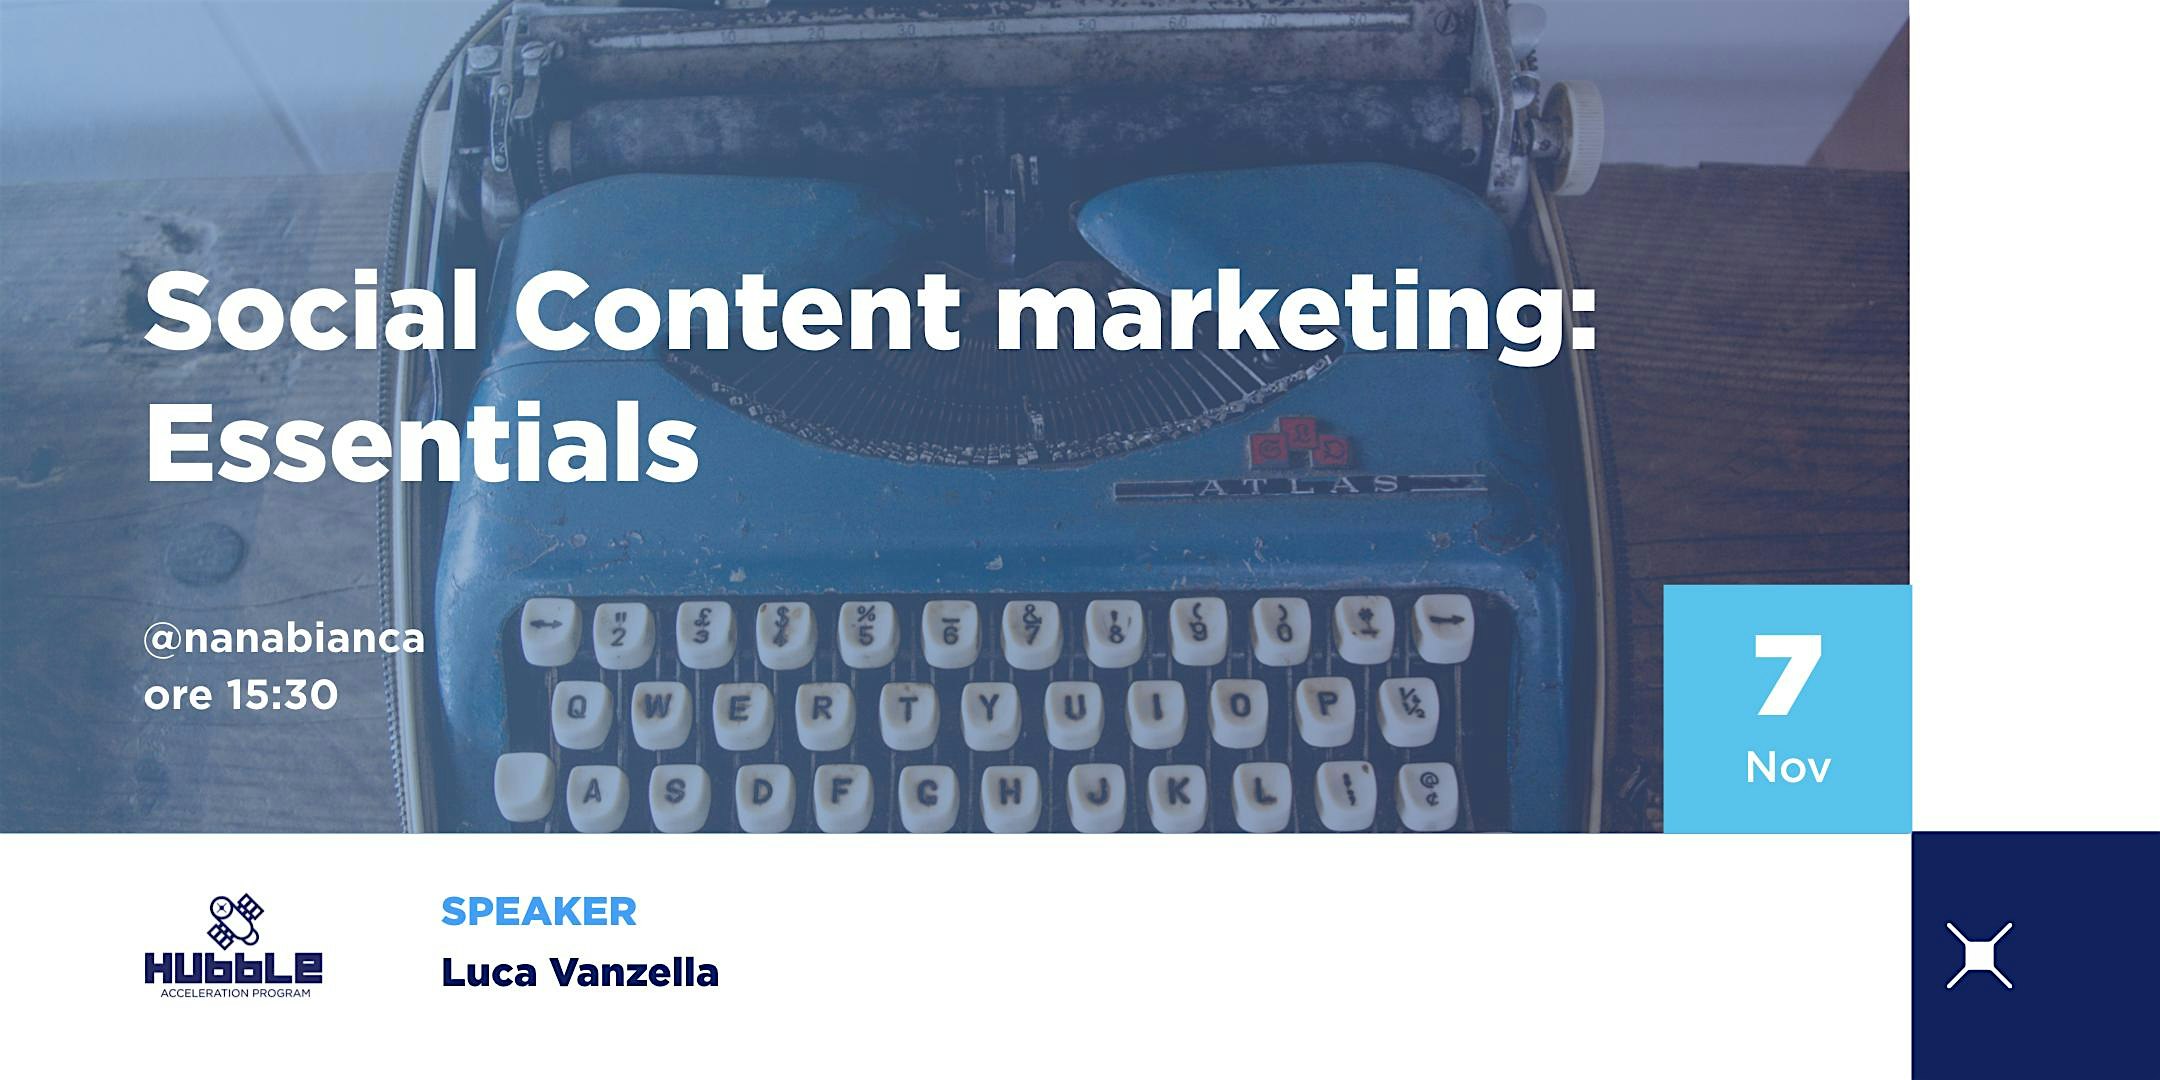 Social Content marketing: essentials